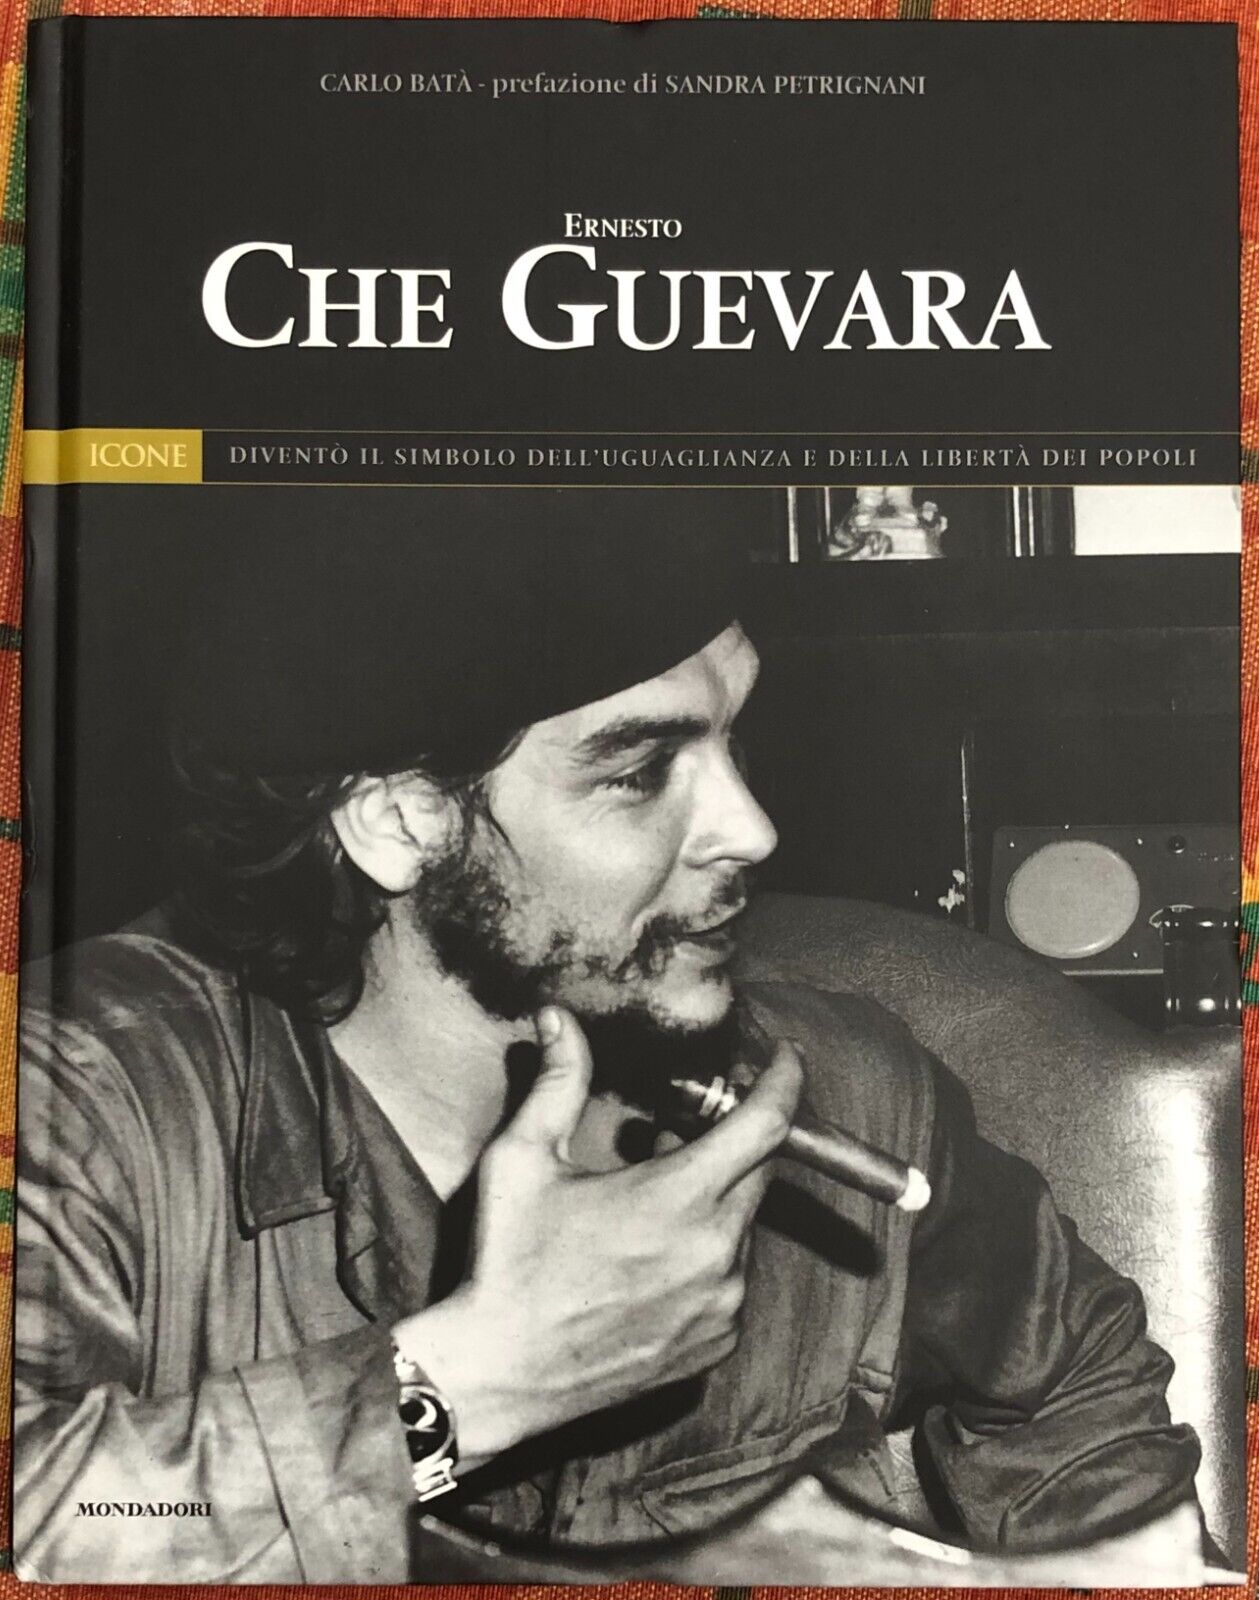  Icone del XX secolo Panorama n. 12 - Ernesto Che Guevara di Carlo Bat?, 2004,